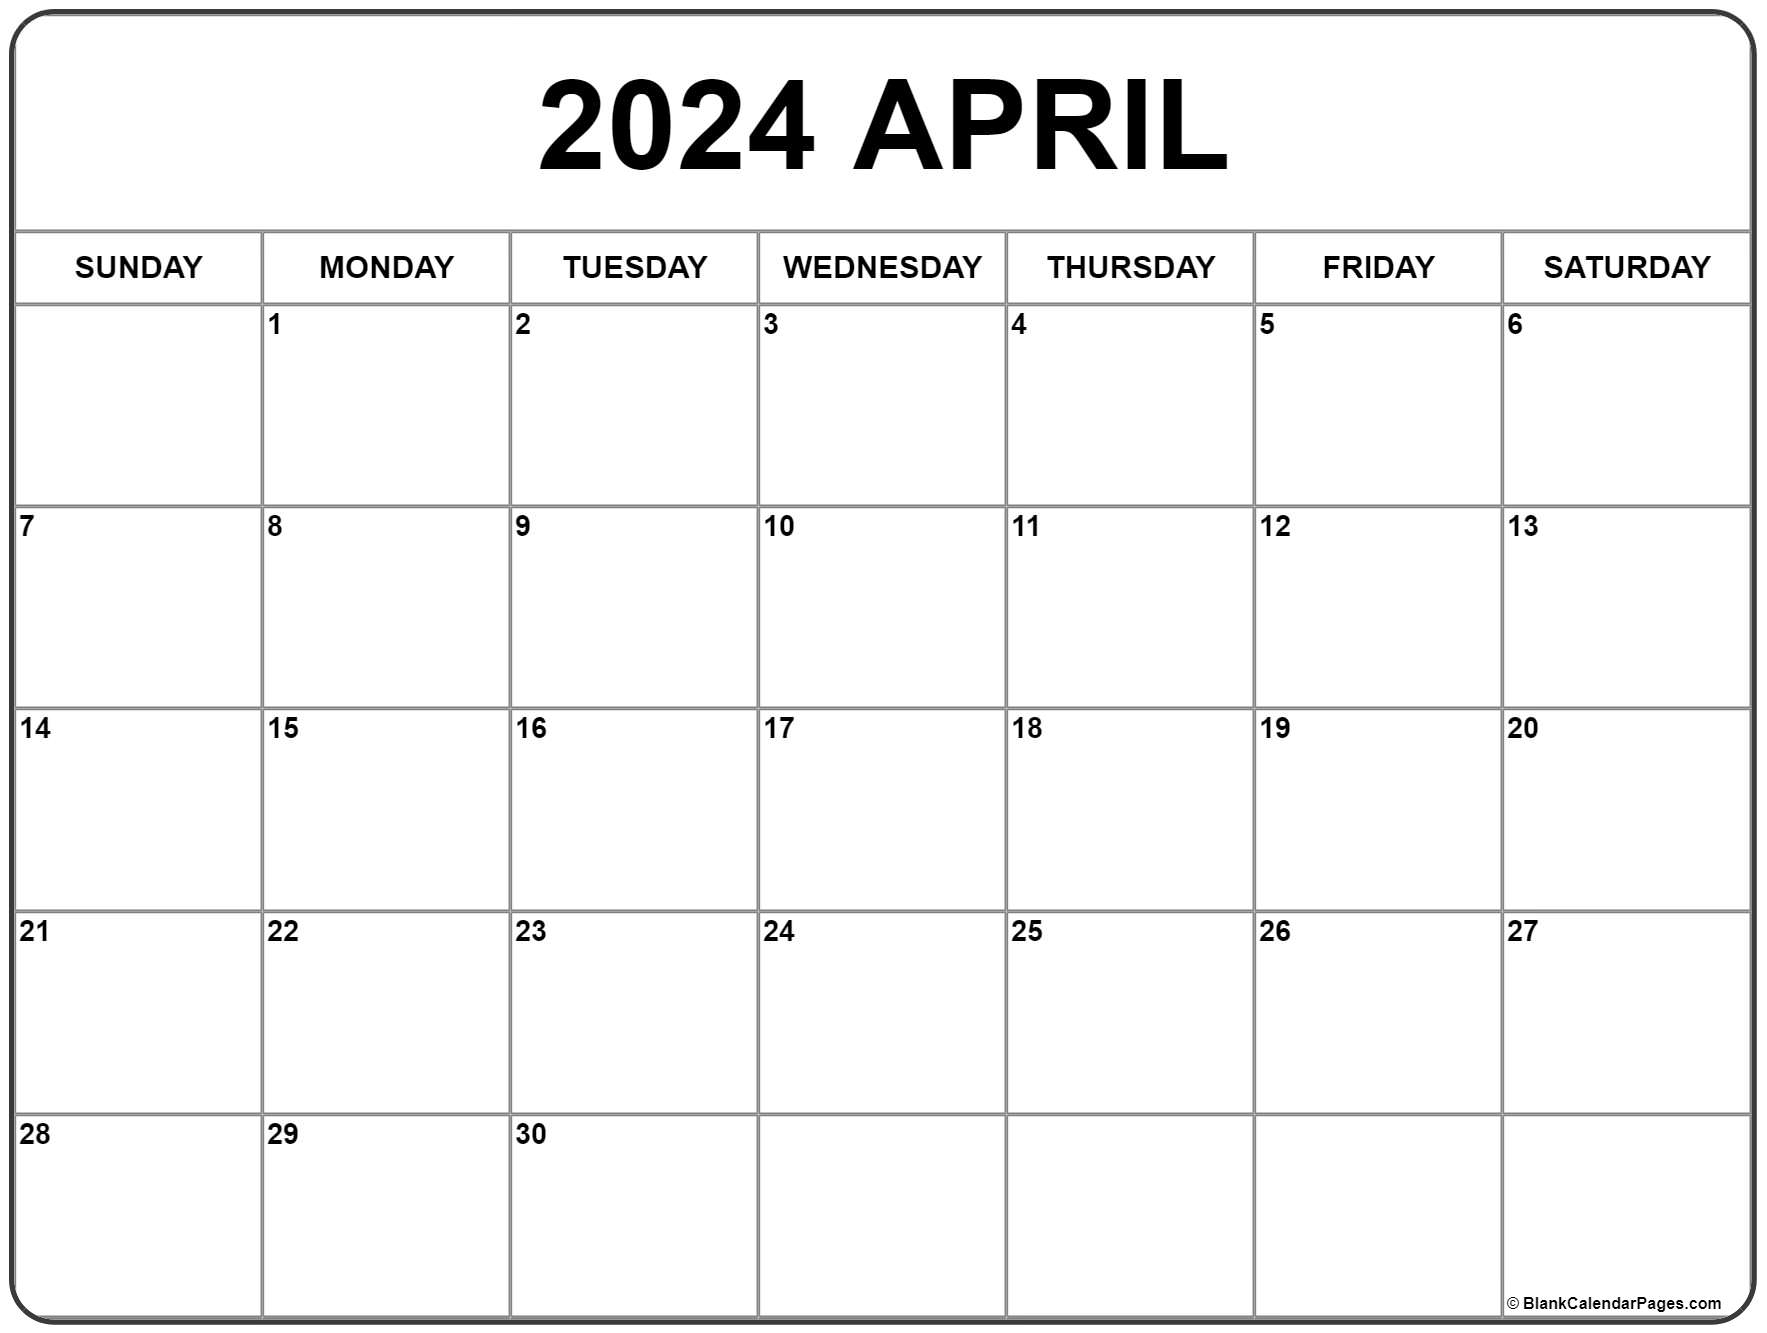 April 2024 Calendar | Free Printable Calendar for Blank April 2024 Calendar Free Printable